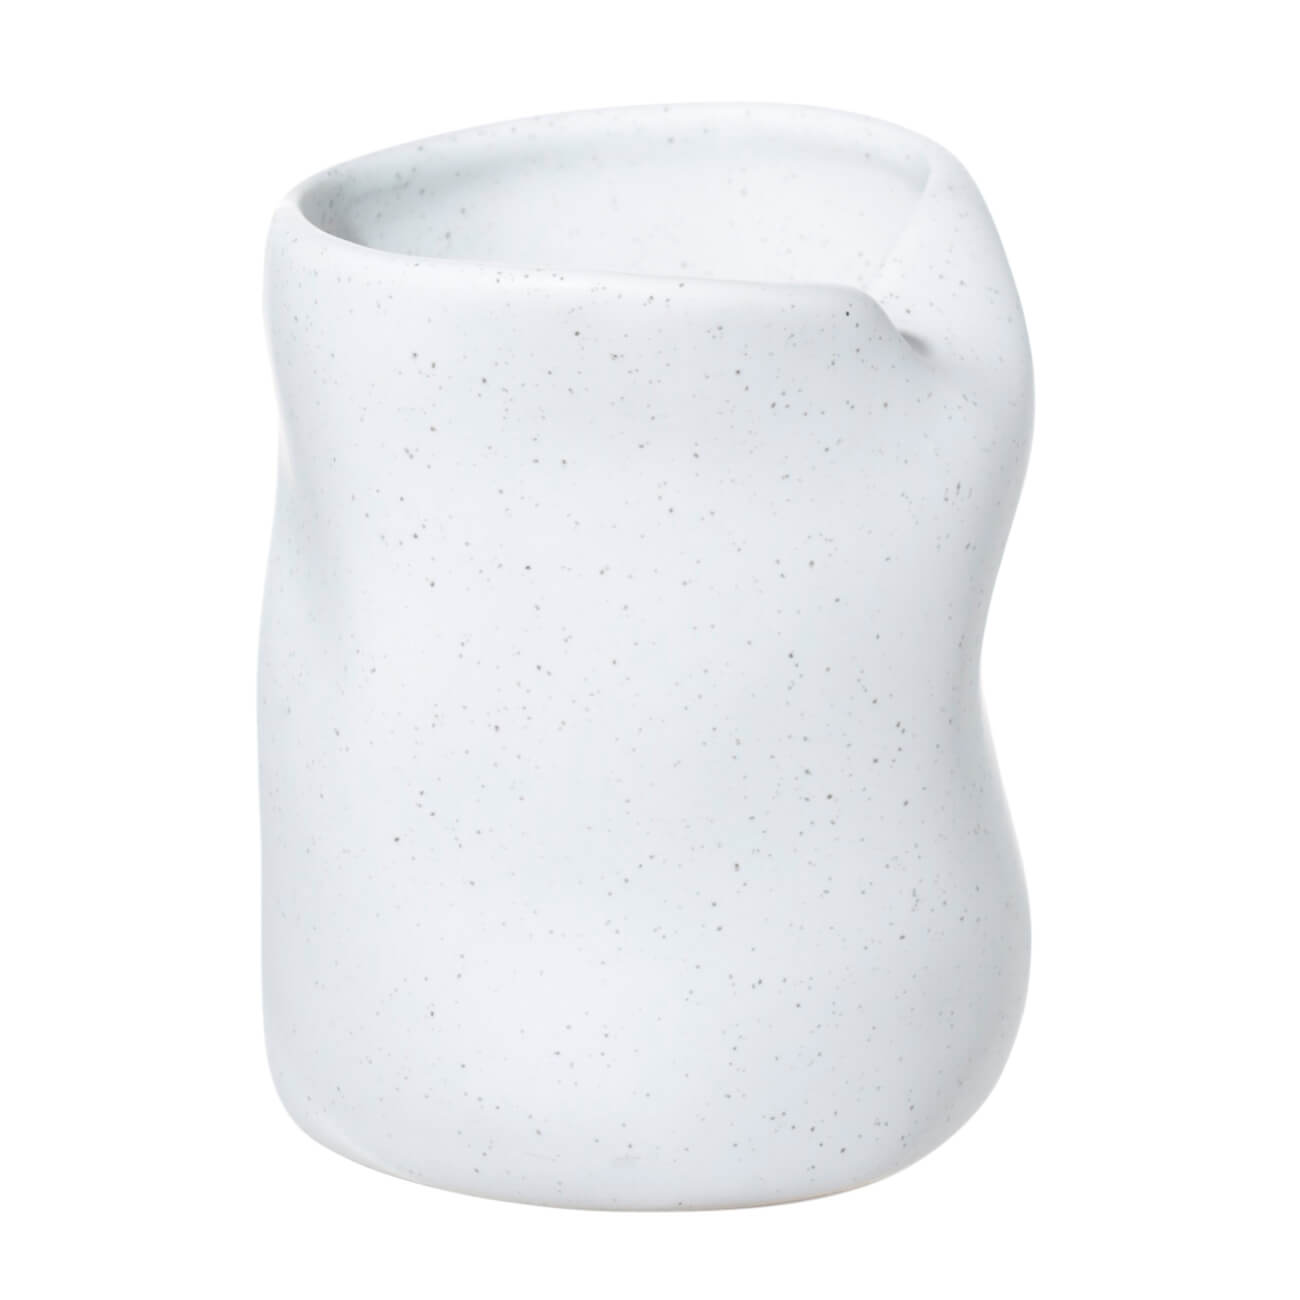 Стакан для ванной комнаты, 10 см, керамика, белый, в крапинку, Delicia стакан vidage marmo rosa керамика белый